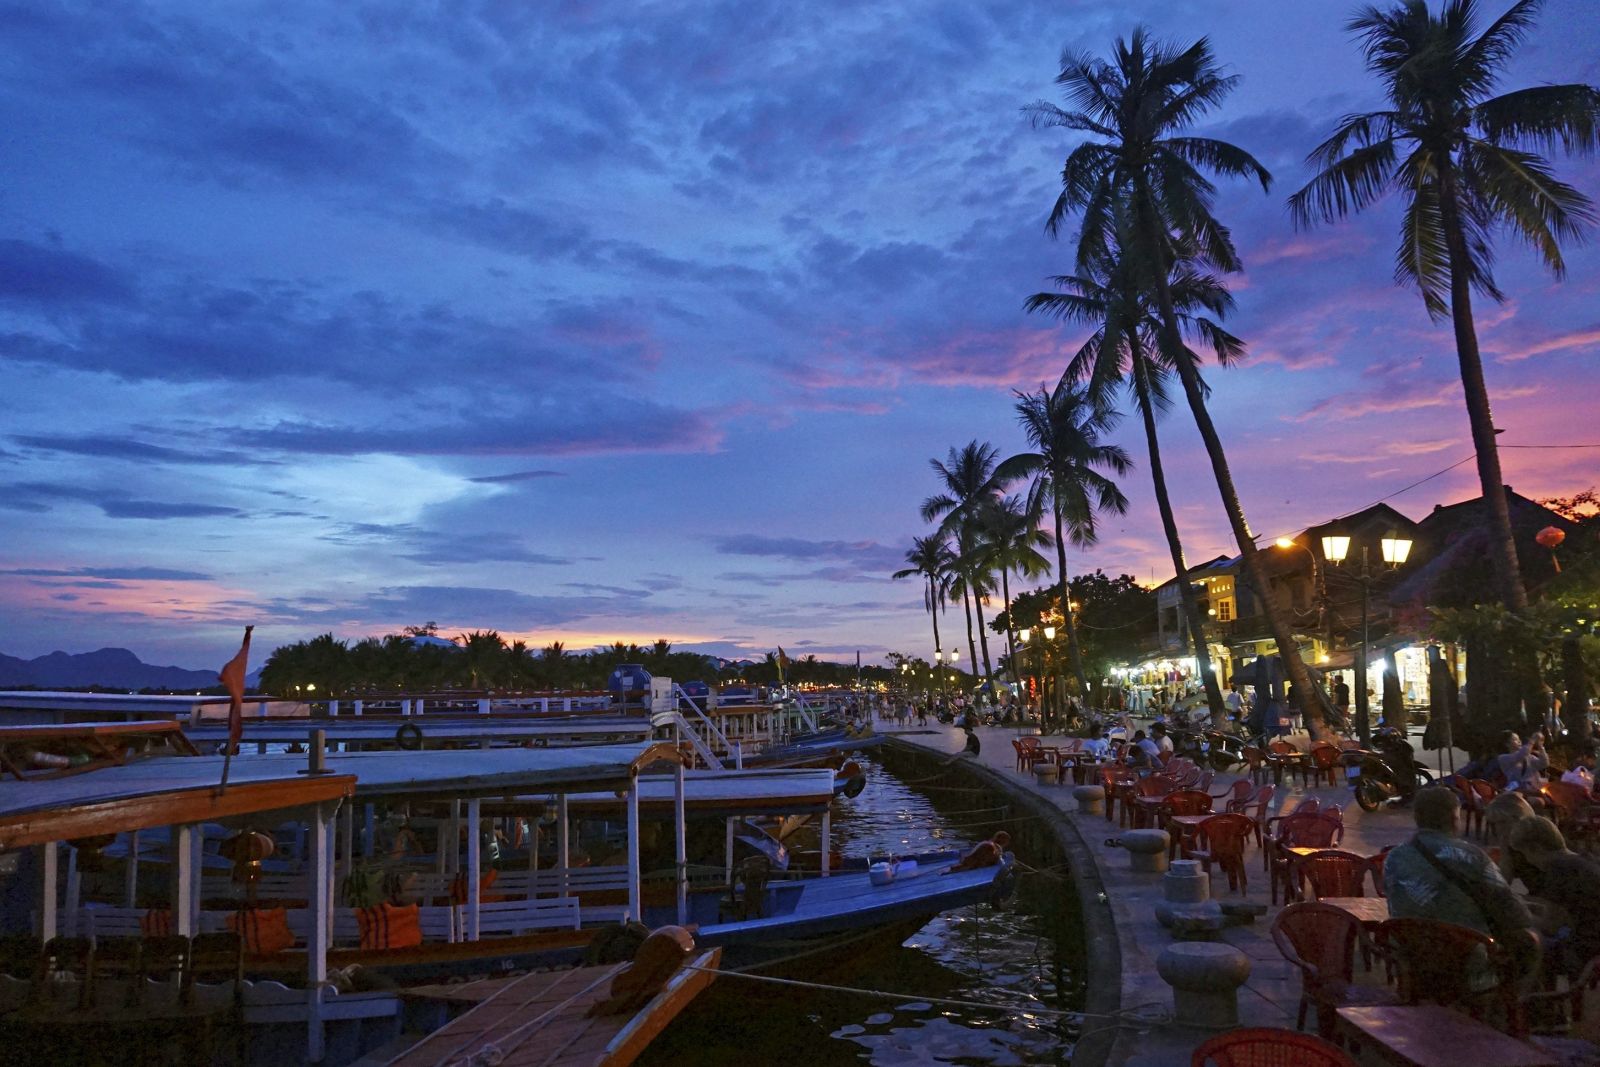 Die kleine Stadt Hoi An in Zentralvietnam strahlt zum Sonnenuntergang eine magische Stimmung aus.